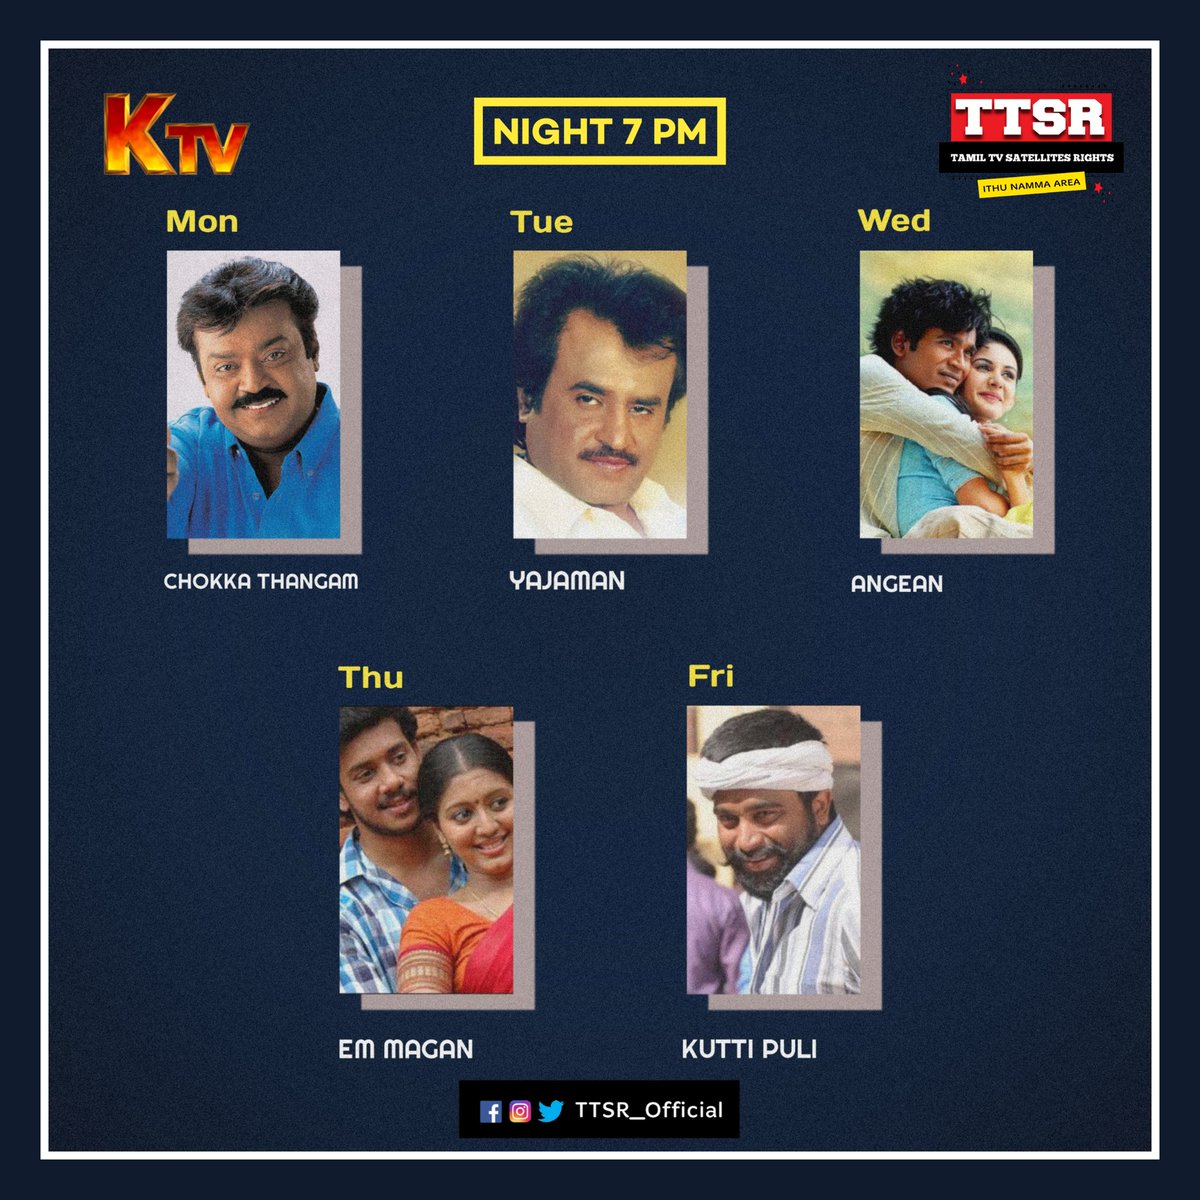 #Night 7 Pm Movie - #KTV
#ChokkaThangam
#Yajaman
#Angean
#Emmagan
#Kuttipuli 
@ttsr_official @vijayavikashm #vijayakanth #rajini #dhaush #bharath #sasikumar #annaatthe #jagamethanthiram #karnan #maran #thiruchitrambalam #ttsr #tamiltvsatellitesrights #vijayavikash
#VIJAYAVIKASHM